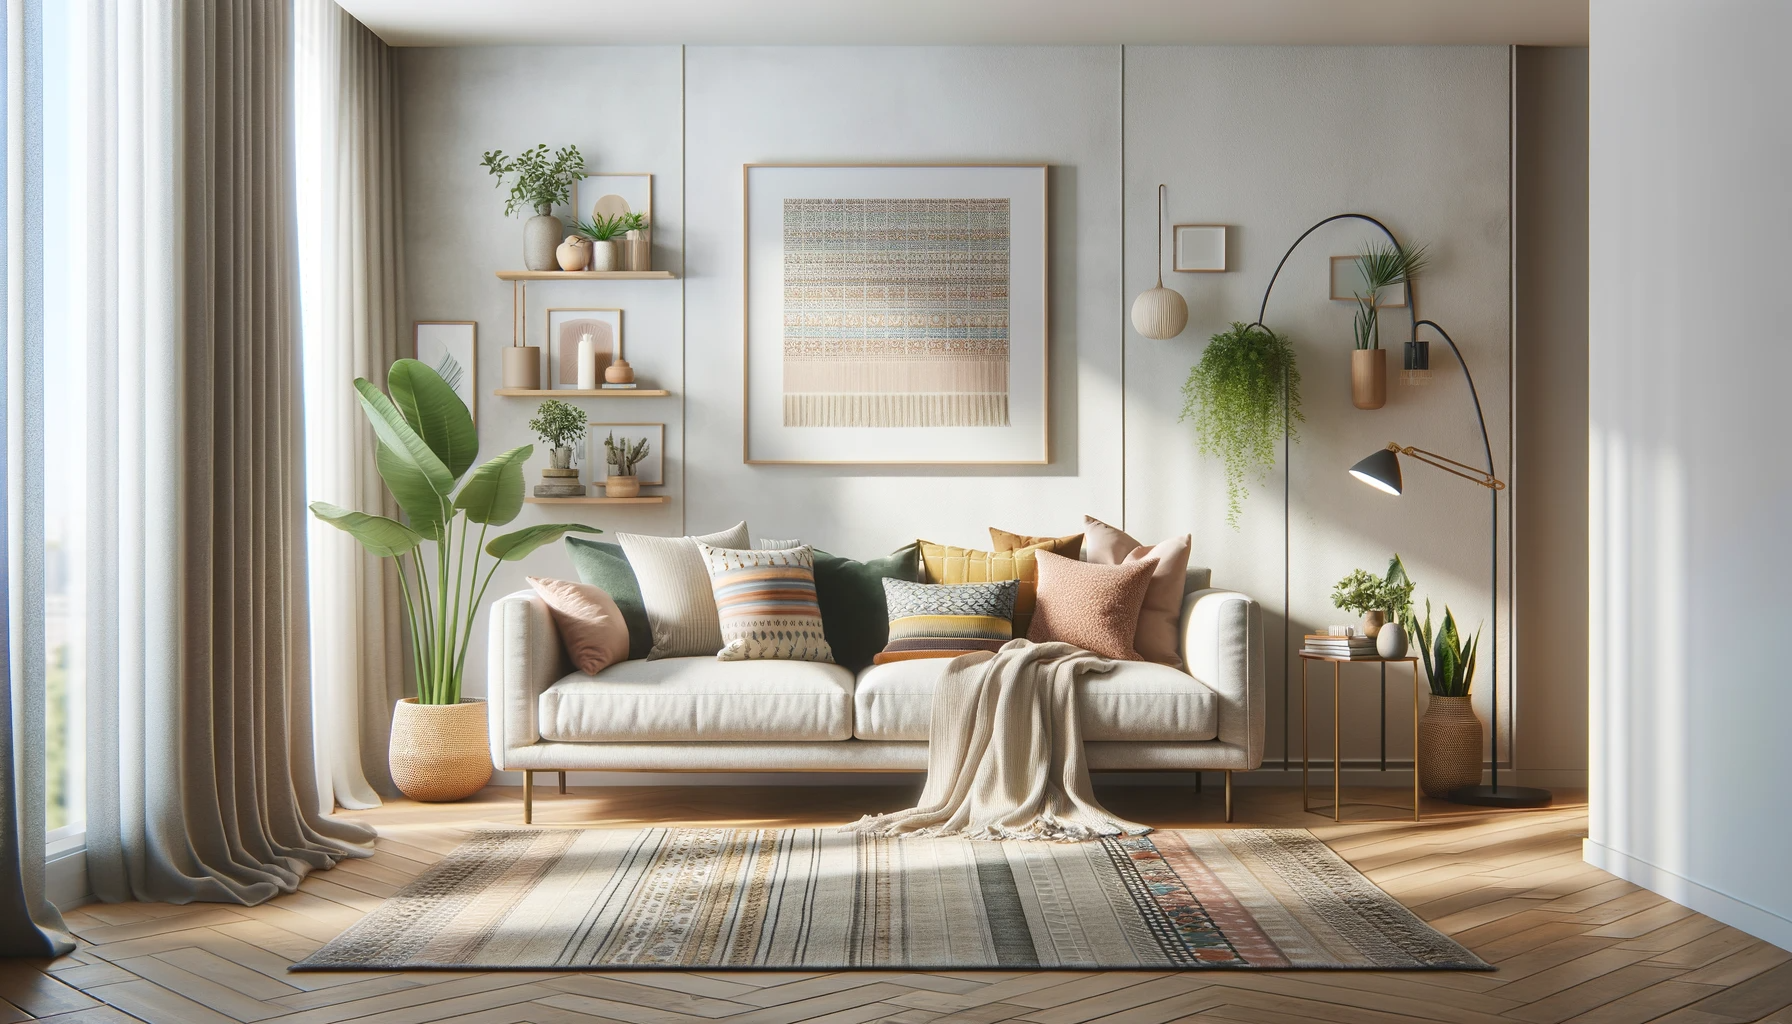 Sala de estar moderna com decoração elegante, misturando minimalismo e Boho-chic, com sofá, almofadas variadas, tapete e plantas.